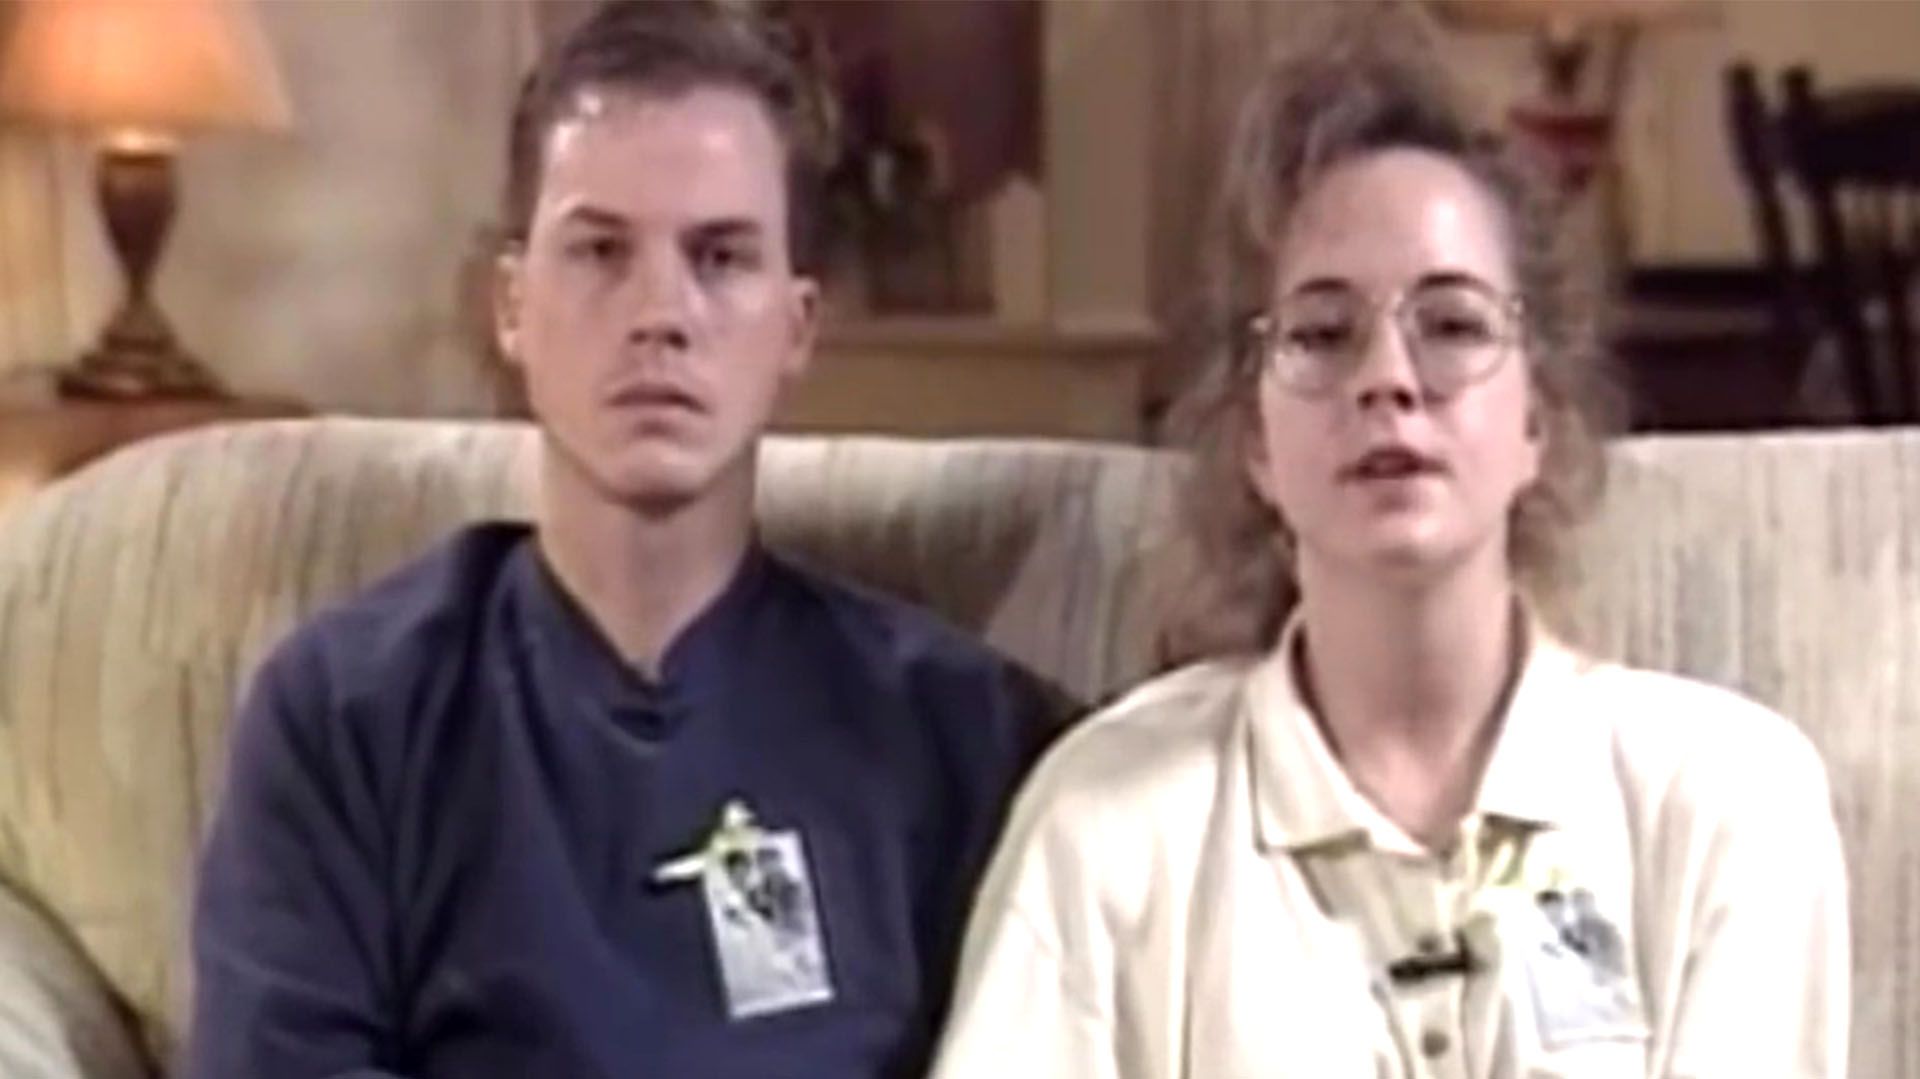 David y Susan Smith, en una entrevista concendida en televisión, cuando denunciaron el secuestro de sus hijos. Todavía no se conocía la verdad